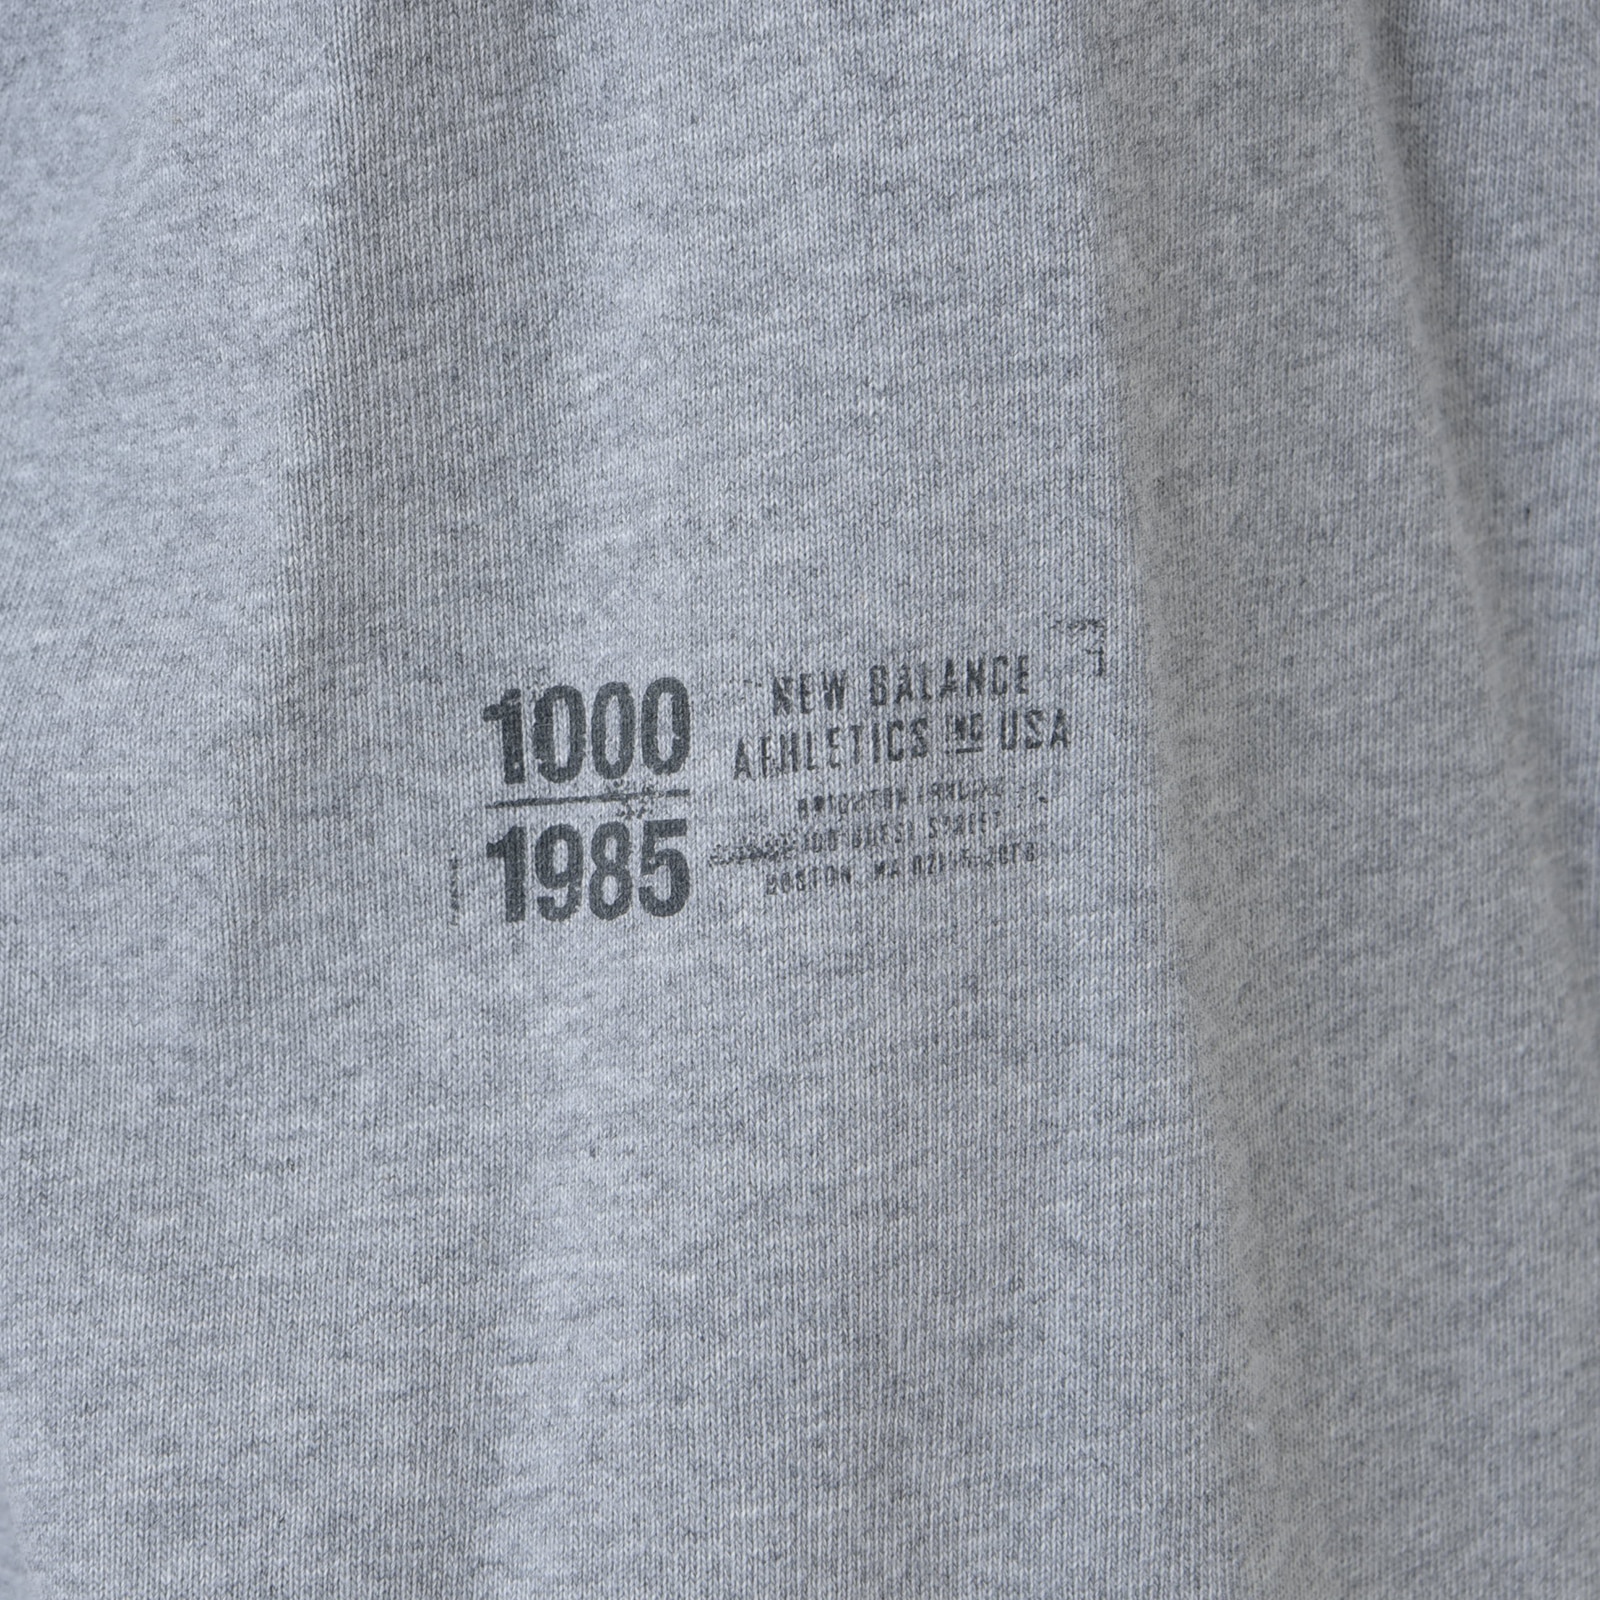 1000罗纹下摆长袖T恤加大版